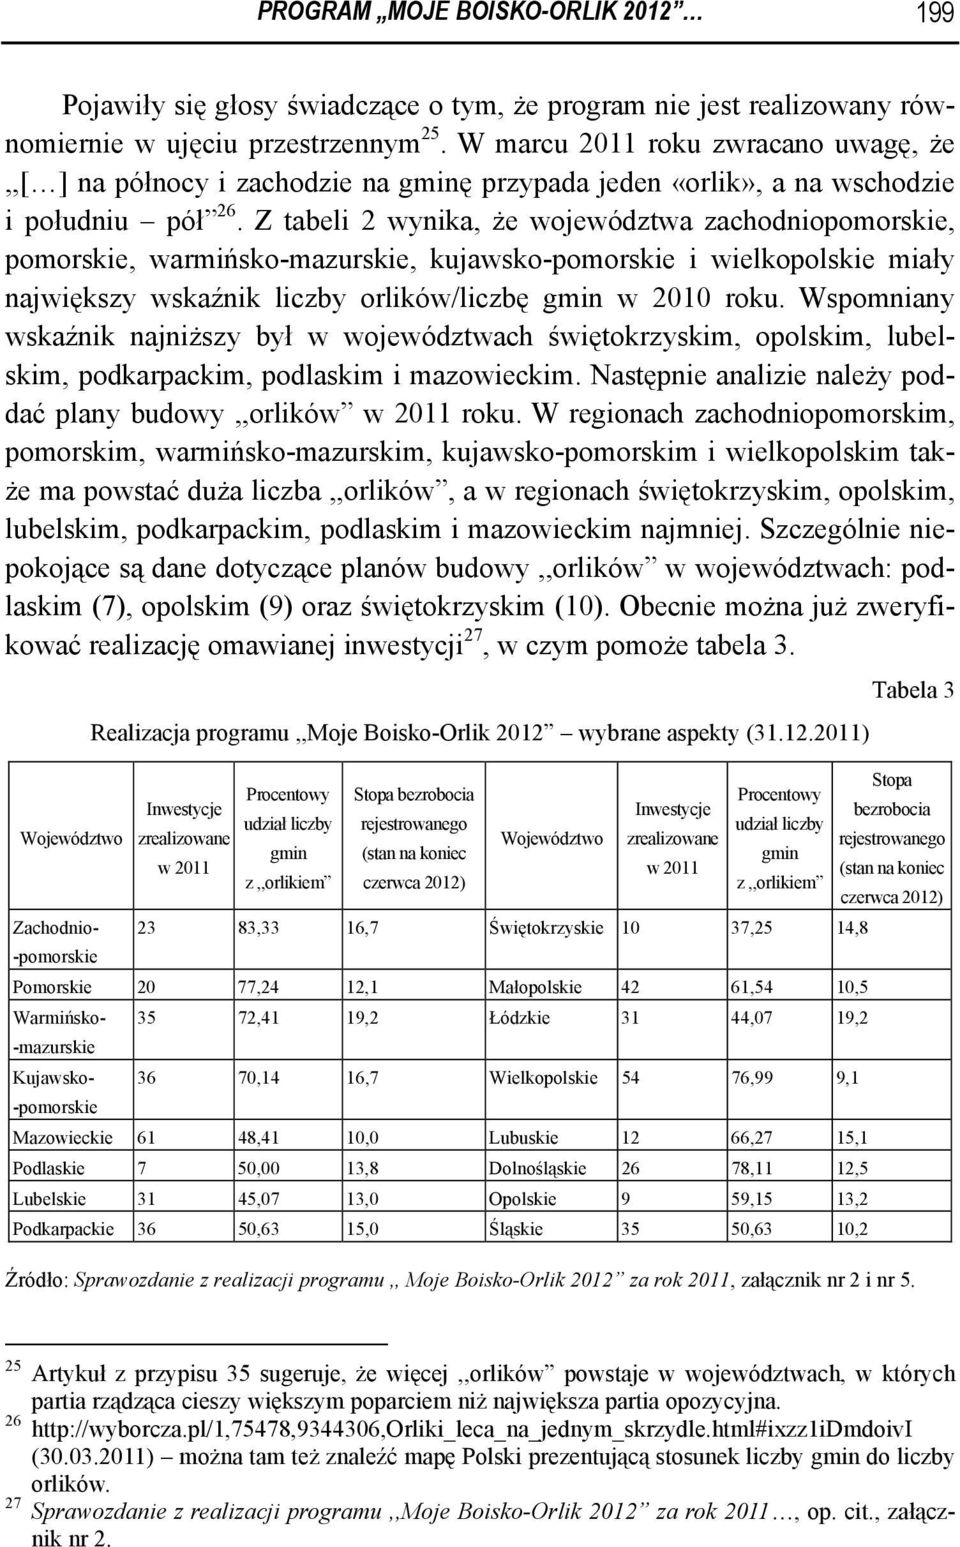 Z tabeli 2 wynika, że województwa zachodniopomorskie, pomorskie, warmińsko-mazurskie, kujawsko-pomorskie i wielkopolskie miały największy wskaźnik liczby orlików/liczbę gmin w 2010 roku.